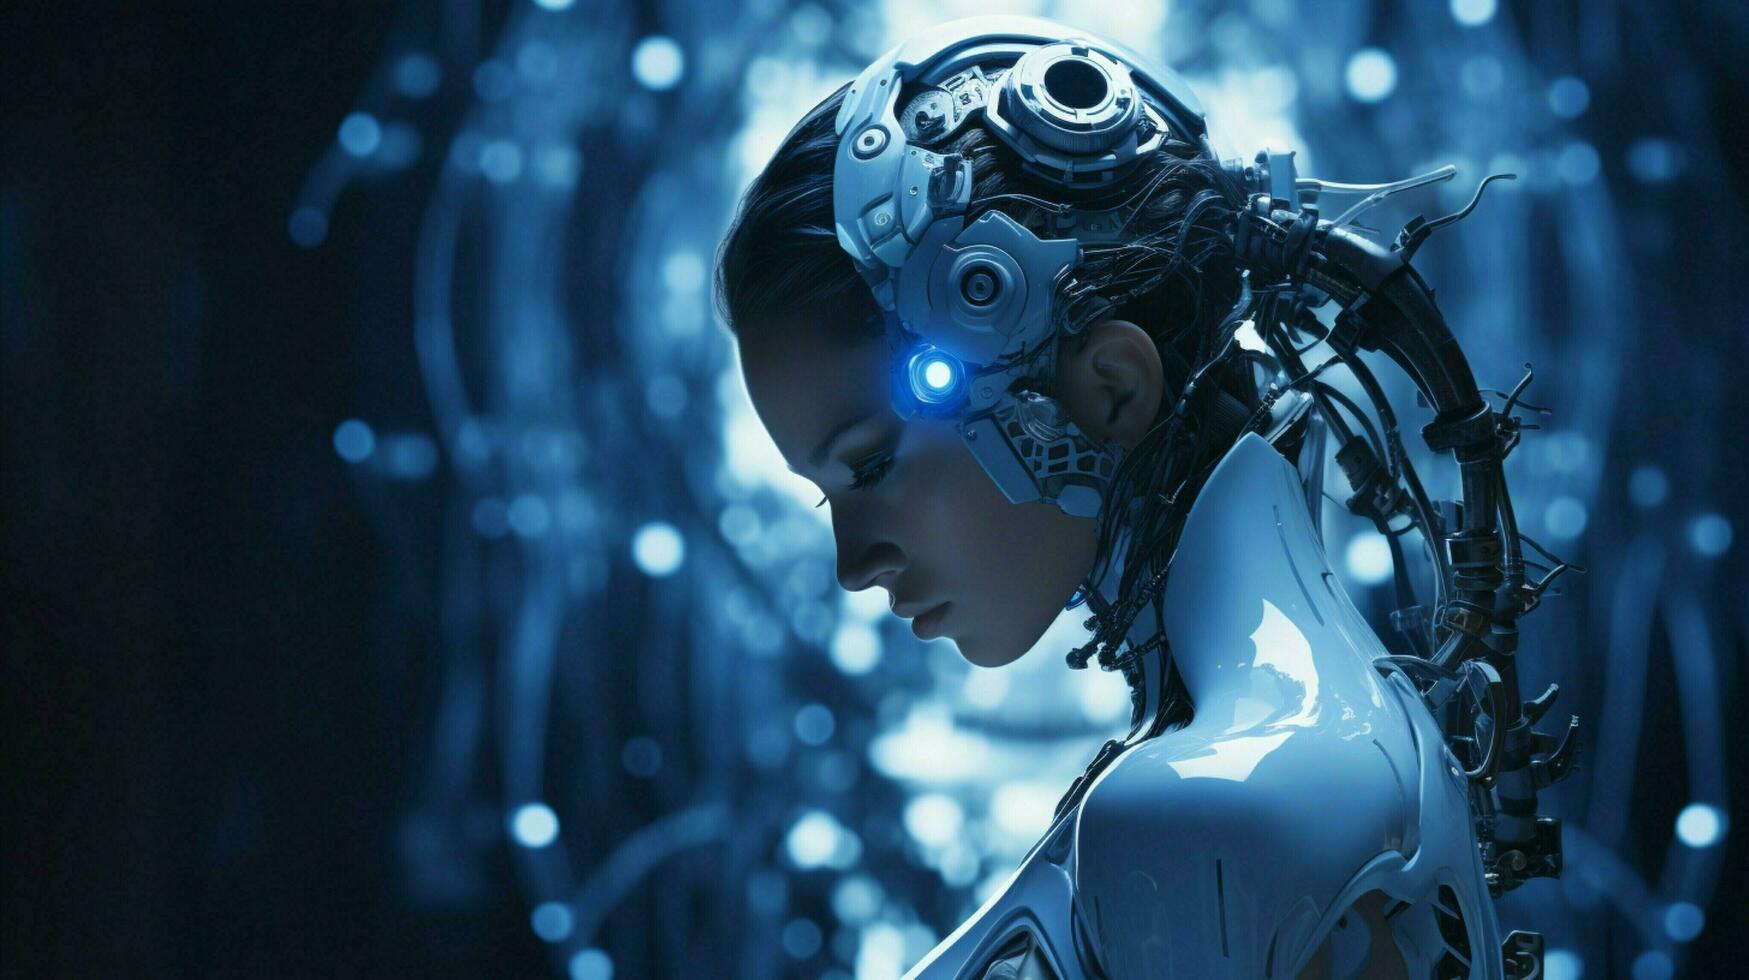 staand futuristische cyborg verlichte door blauw machinerie foto